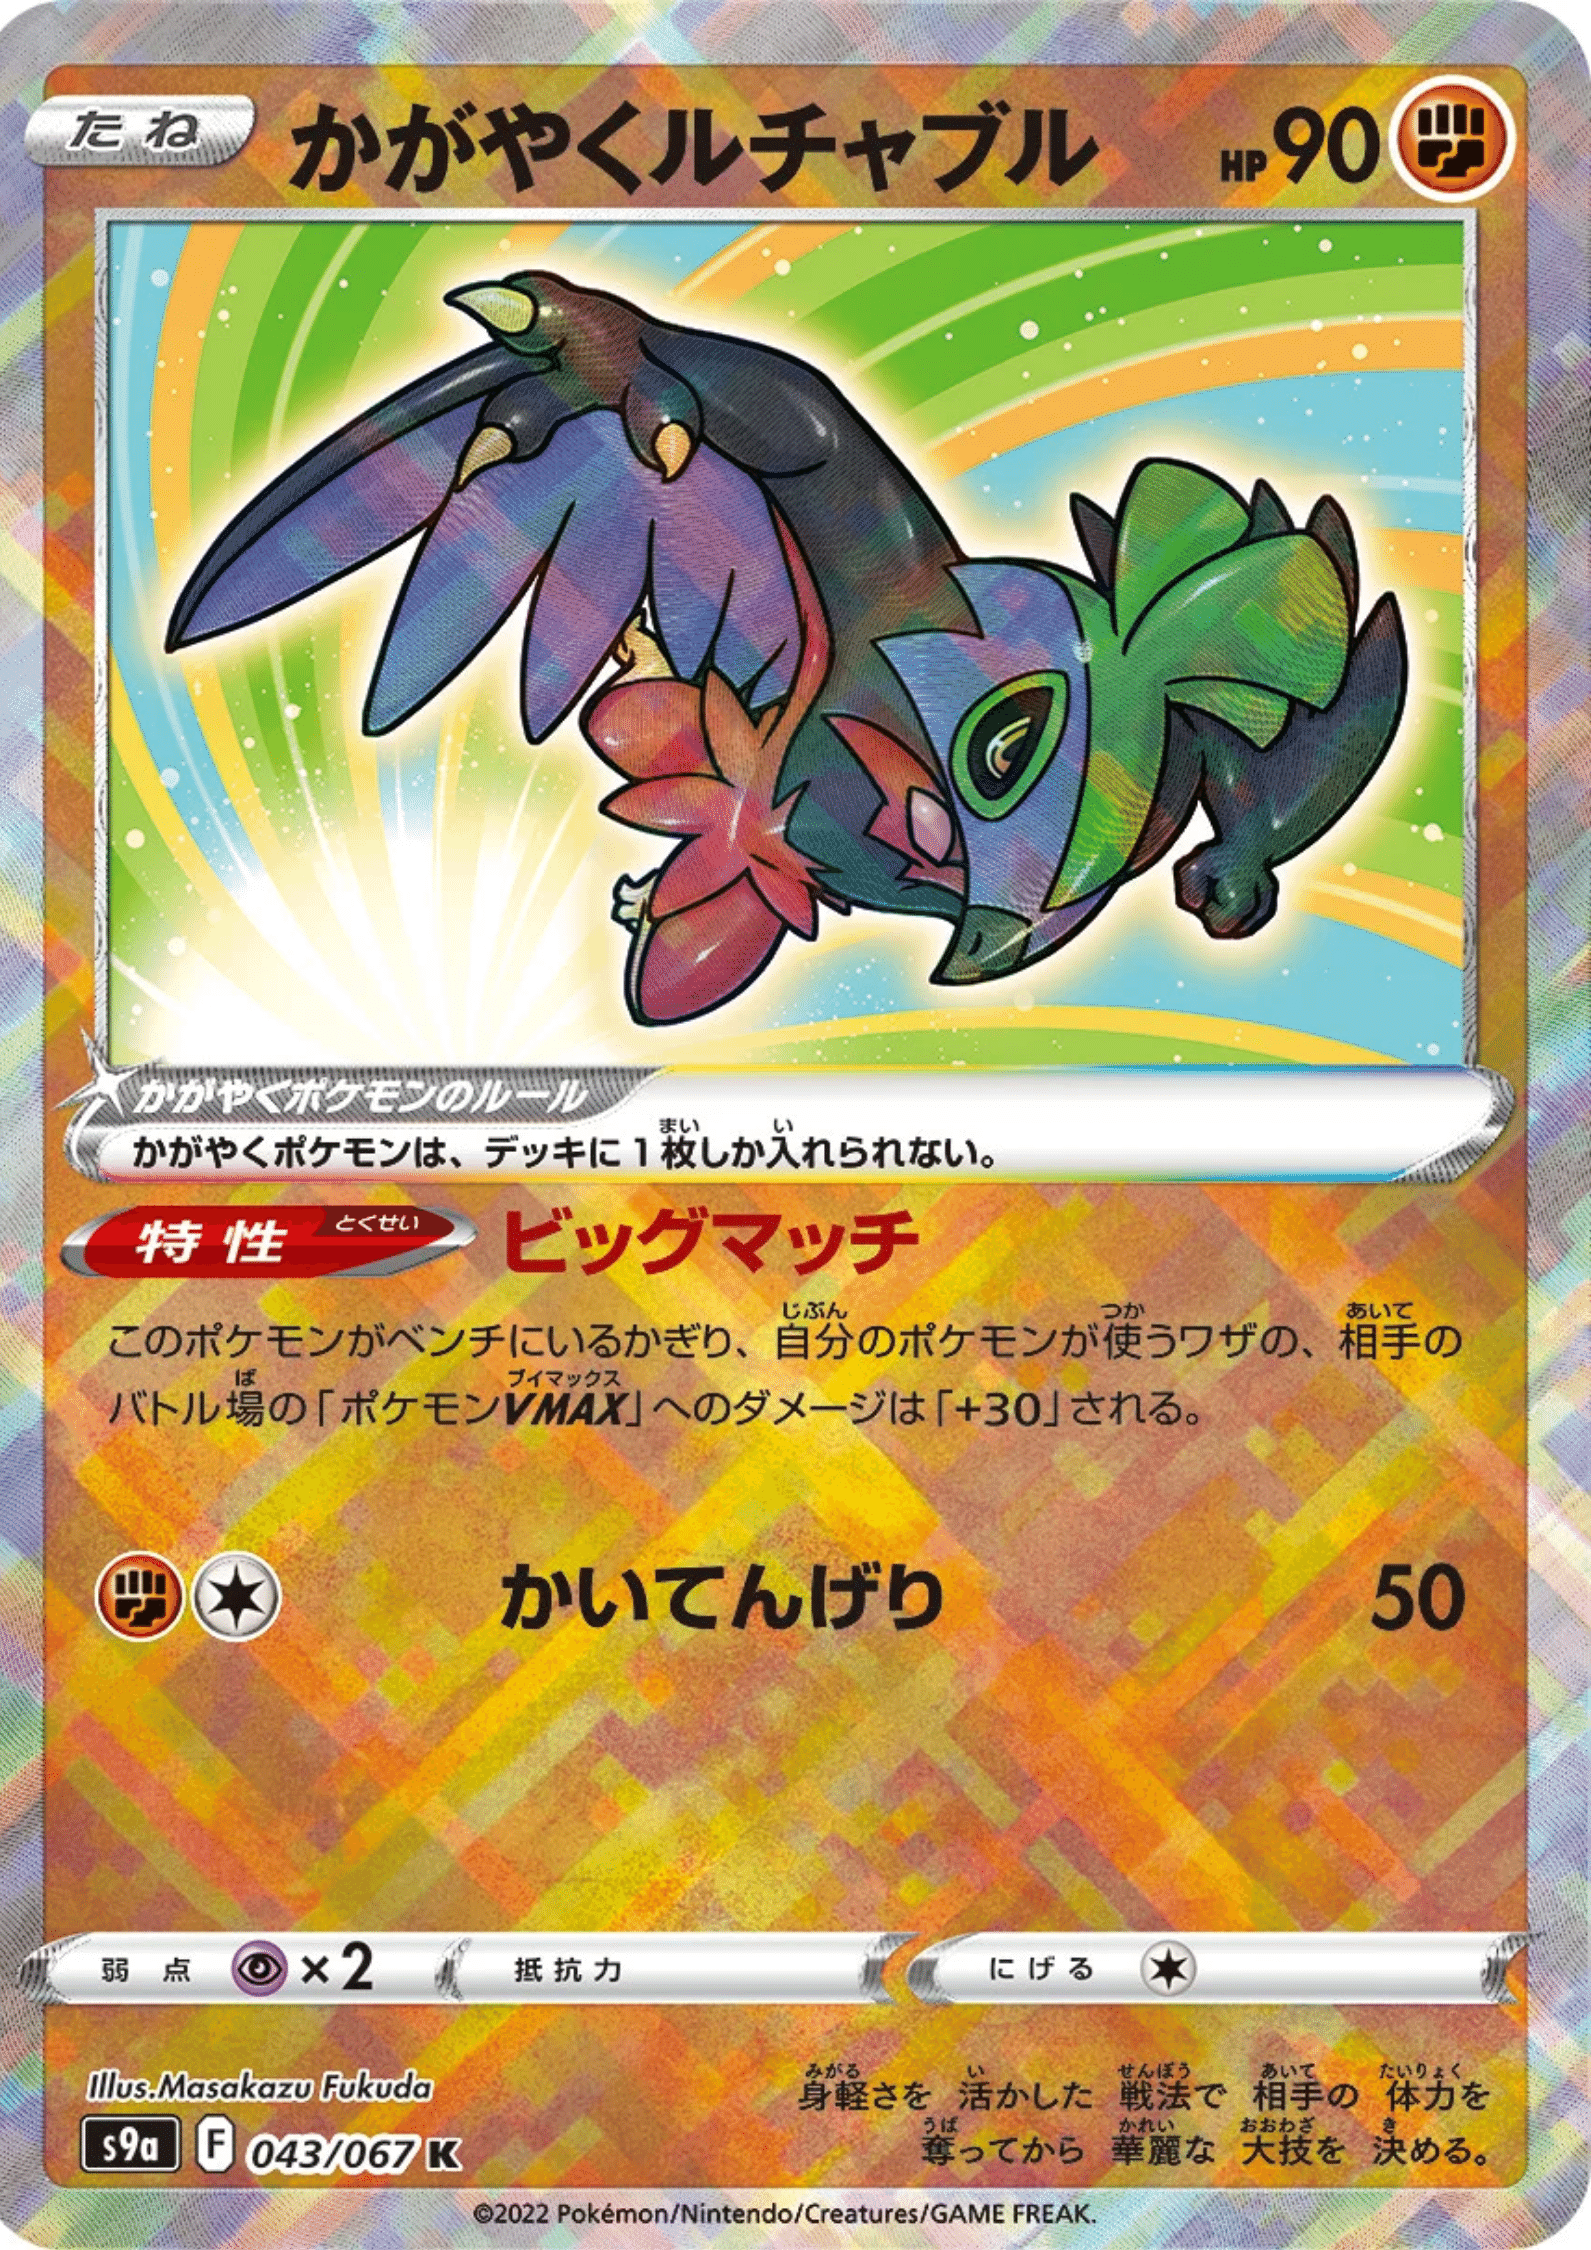 Sparkling Hawlucha 043/067 K | Pokémon S9a Battle Region ChitoroShop